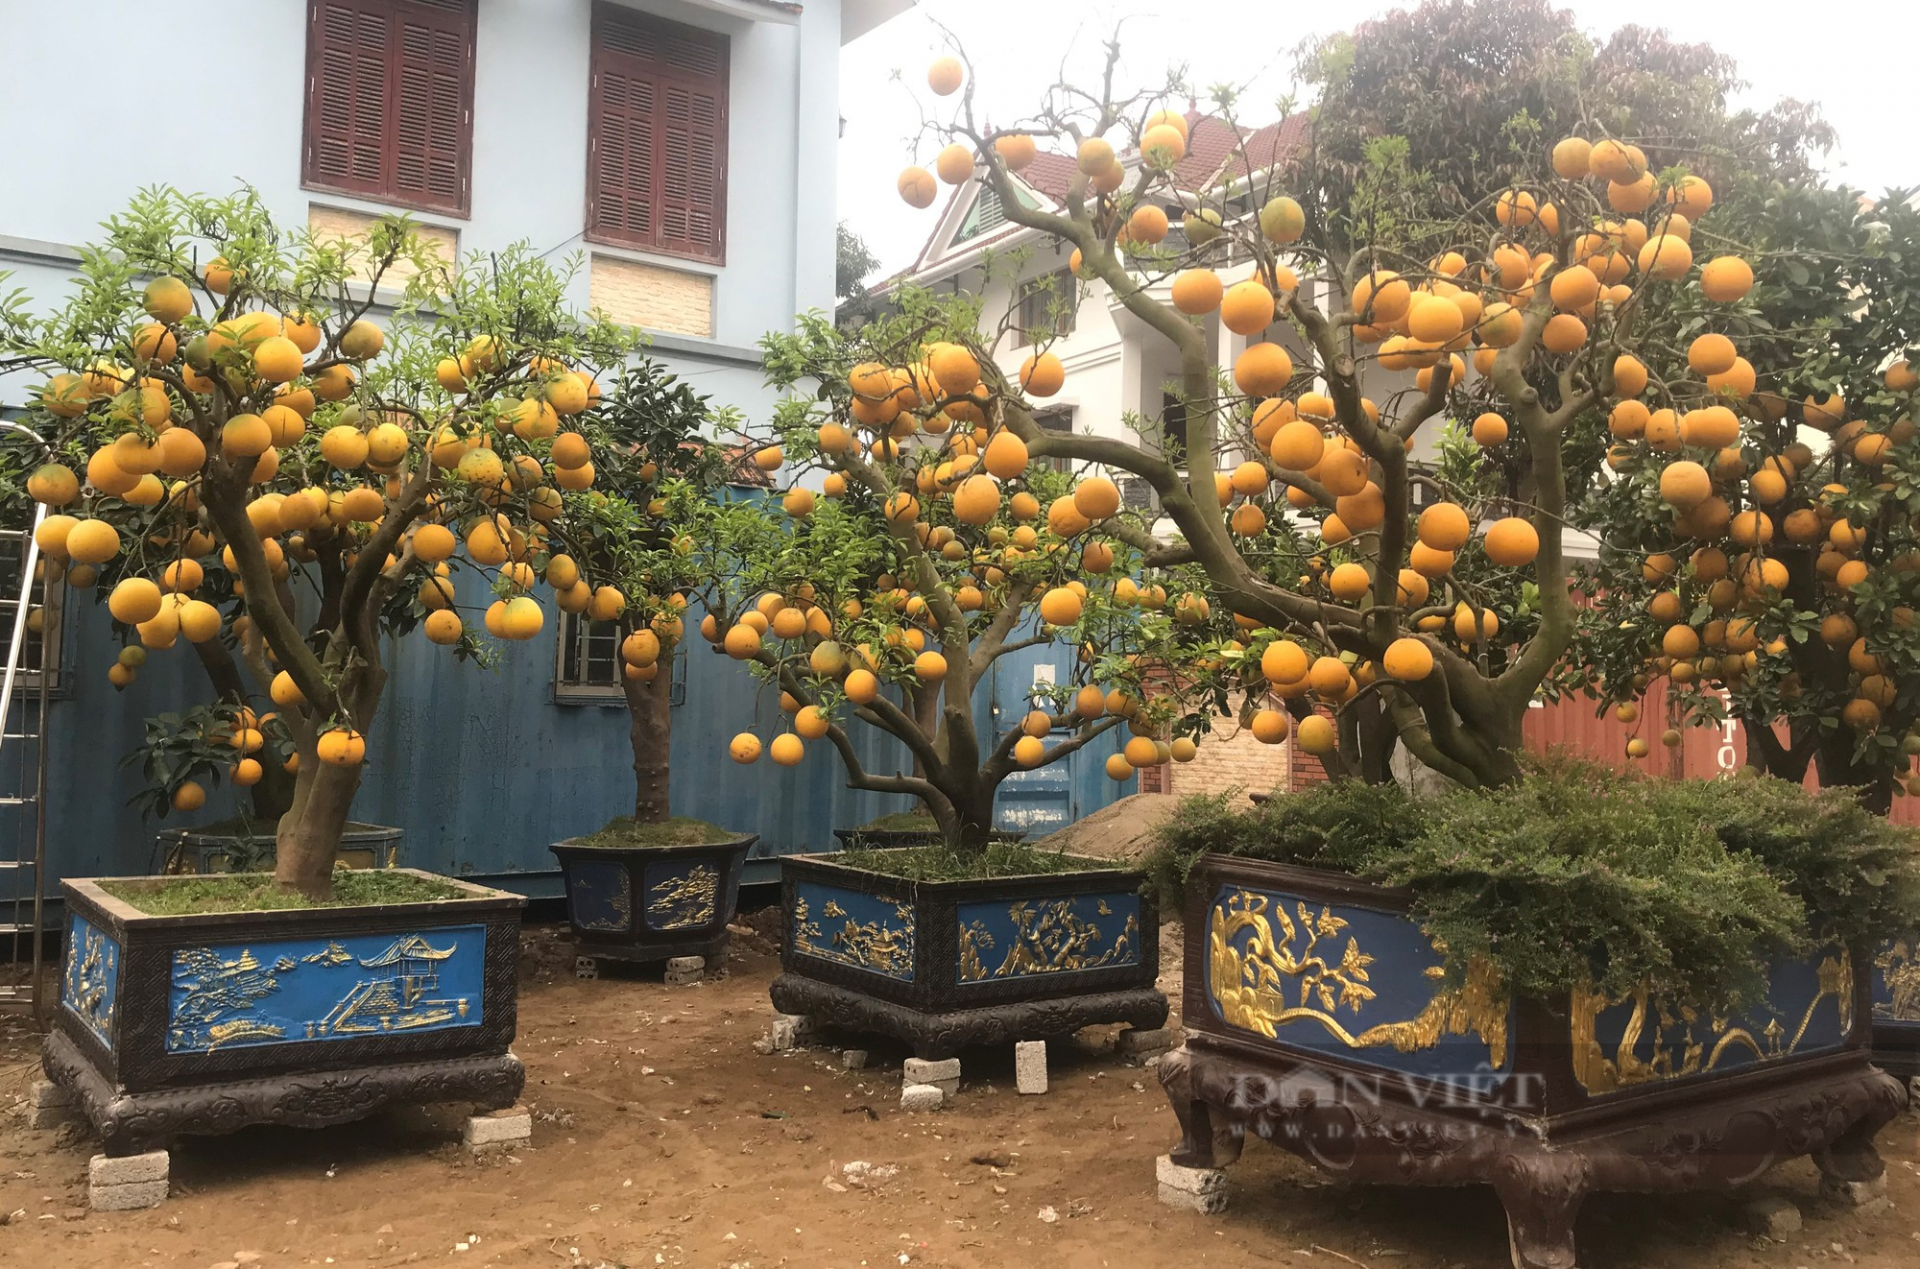 Thứ cây cảnh chưng Tết lạ mắt ở Nghệ An, lá bị vặt sạch, chỉ thấy toàn quả vàng